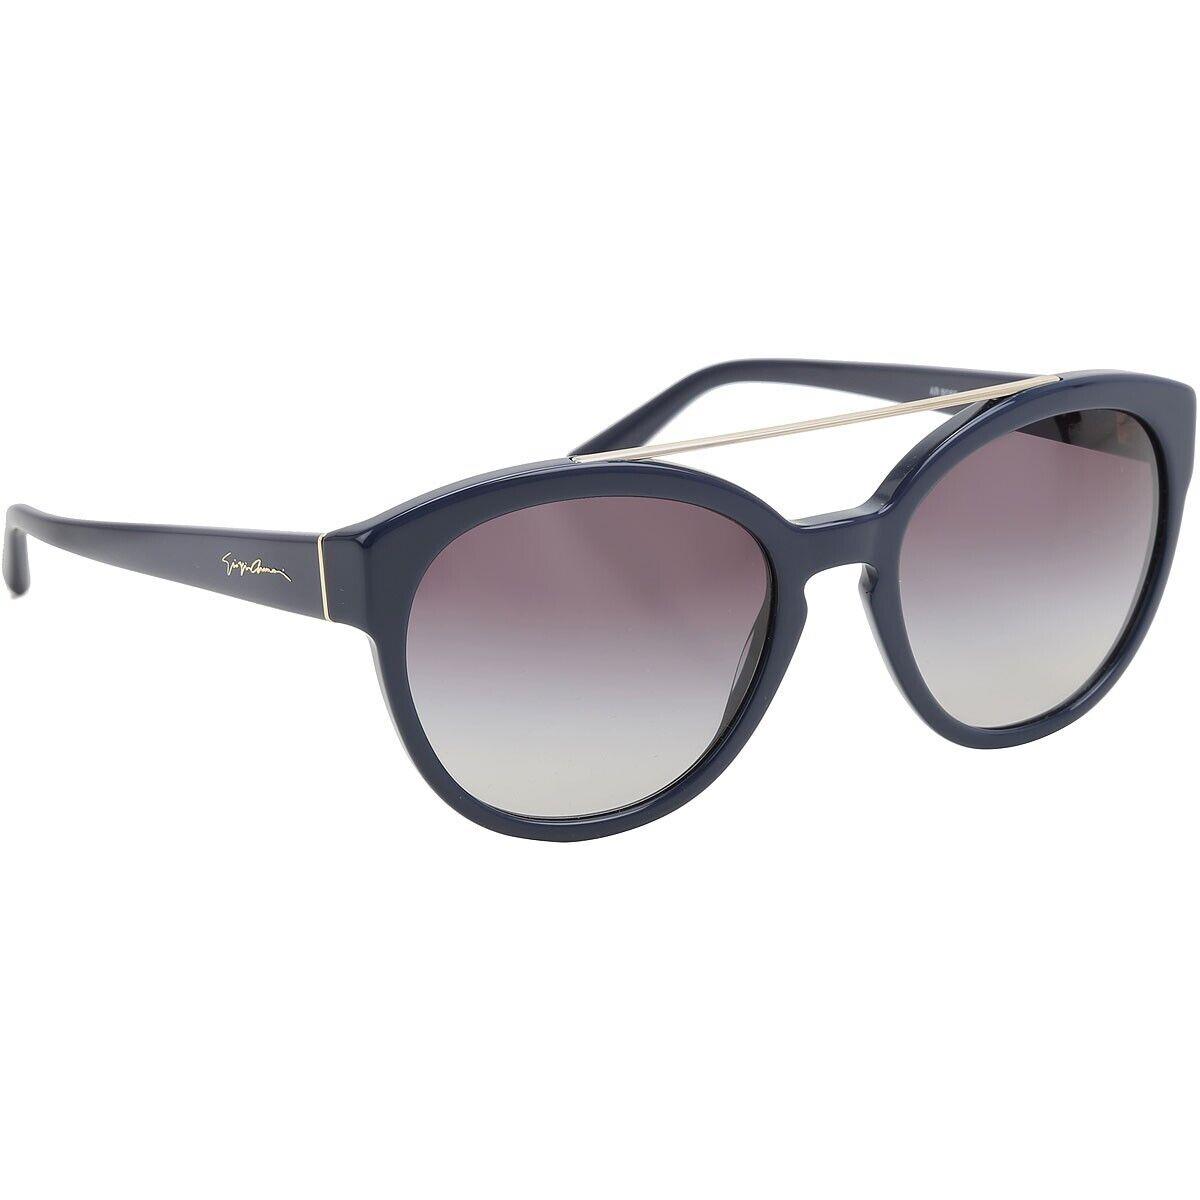 Giorgio Armani AR8086 5543/8G Blue Round Sunglasses Frame 55-19-140